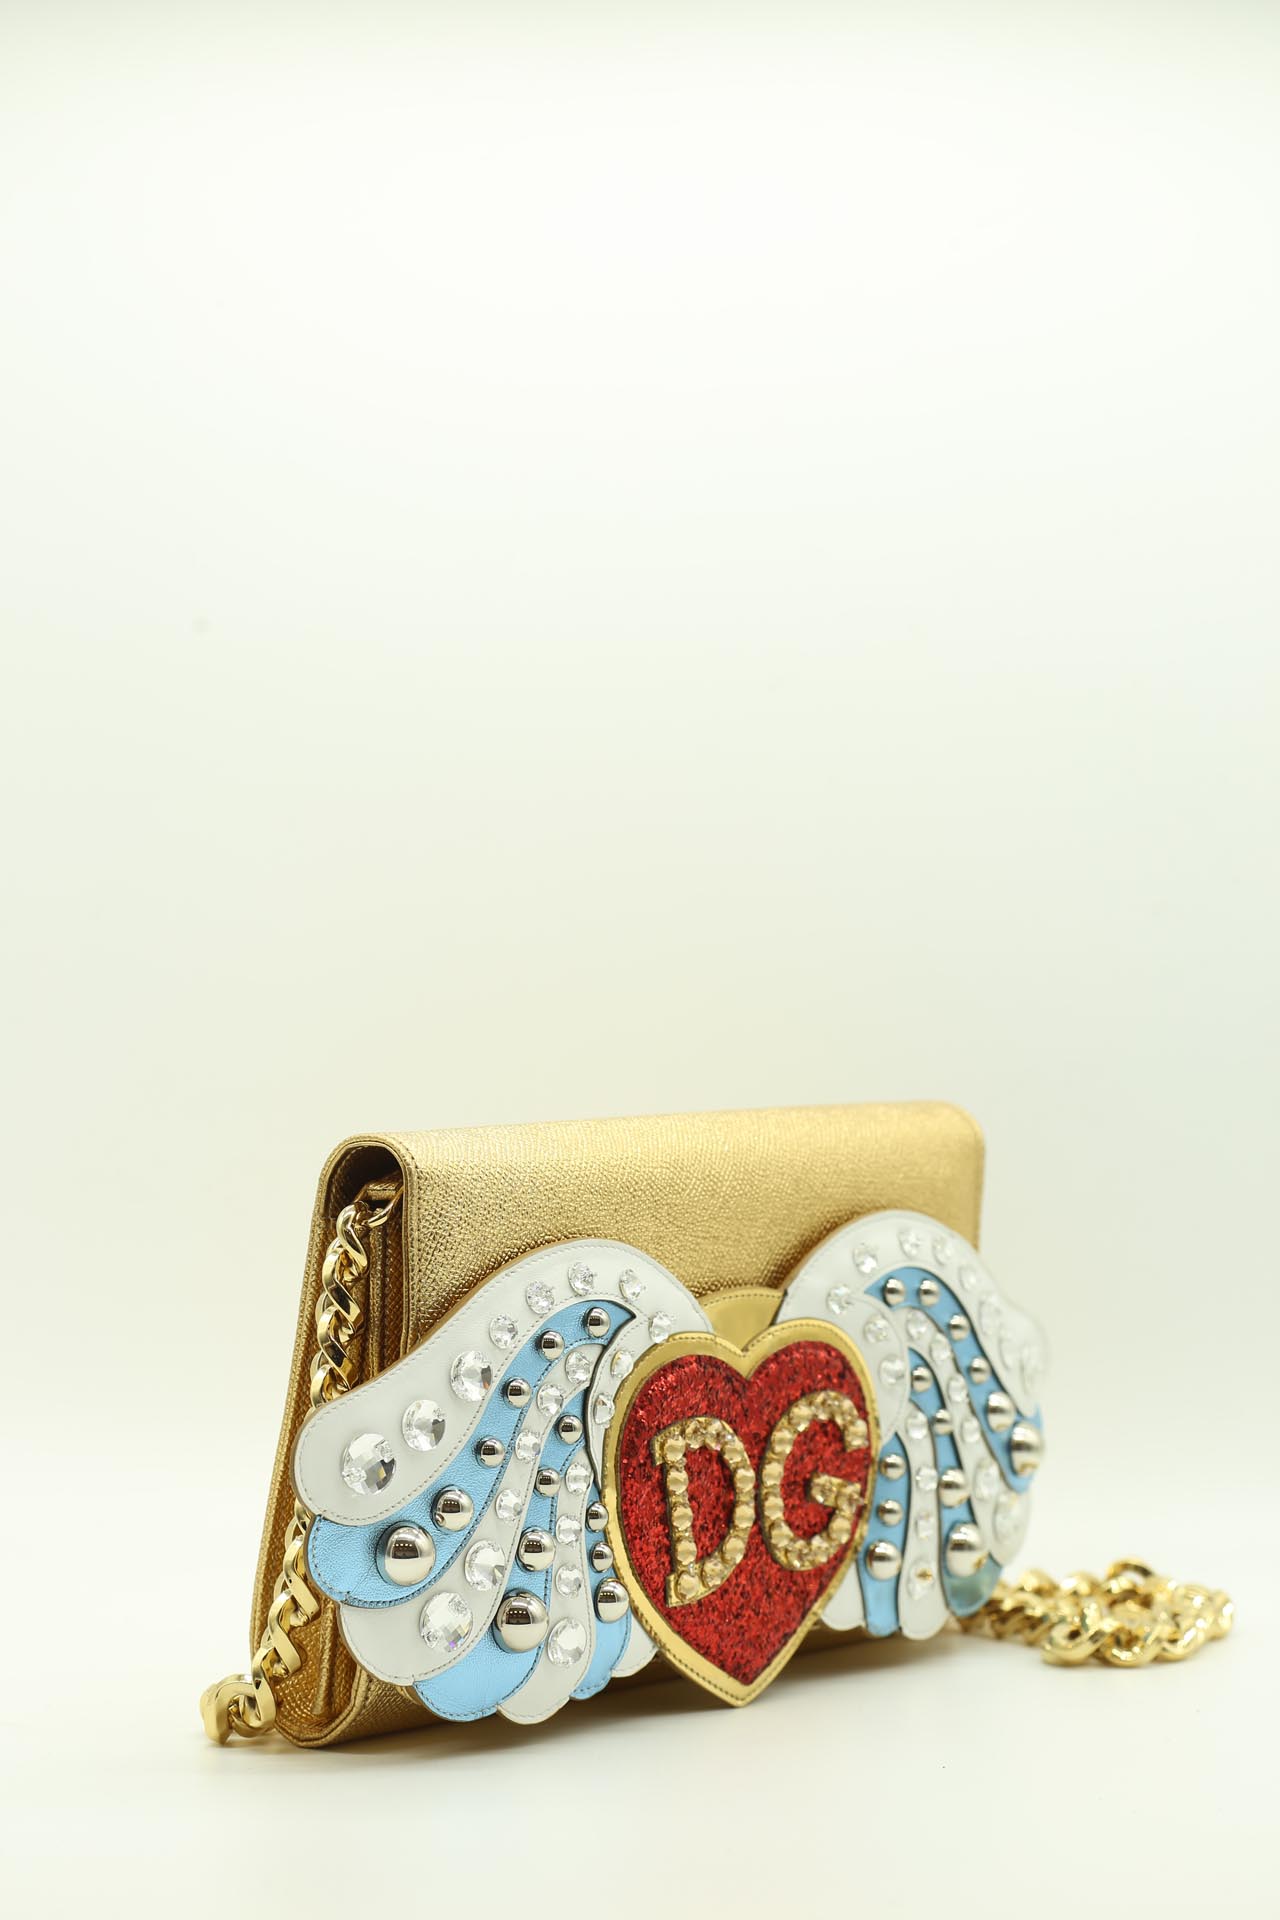 Dolce & Gabbana, Bag